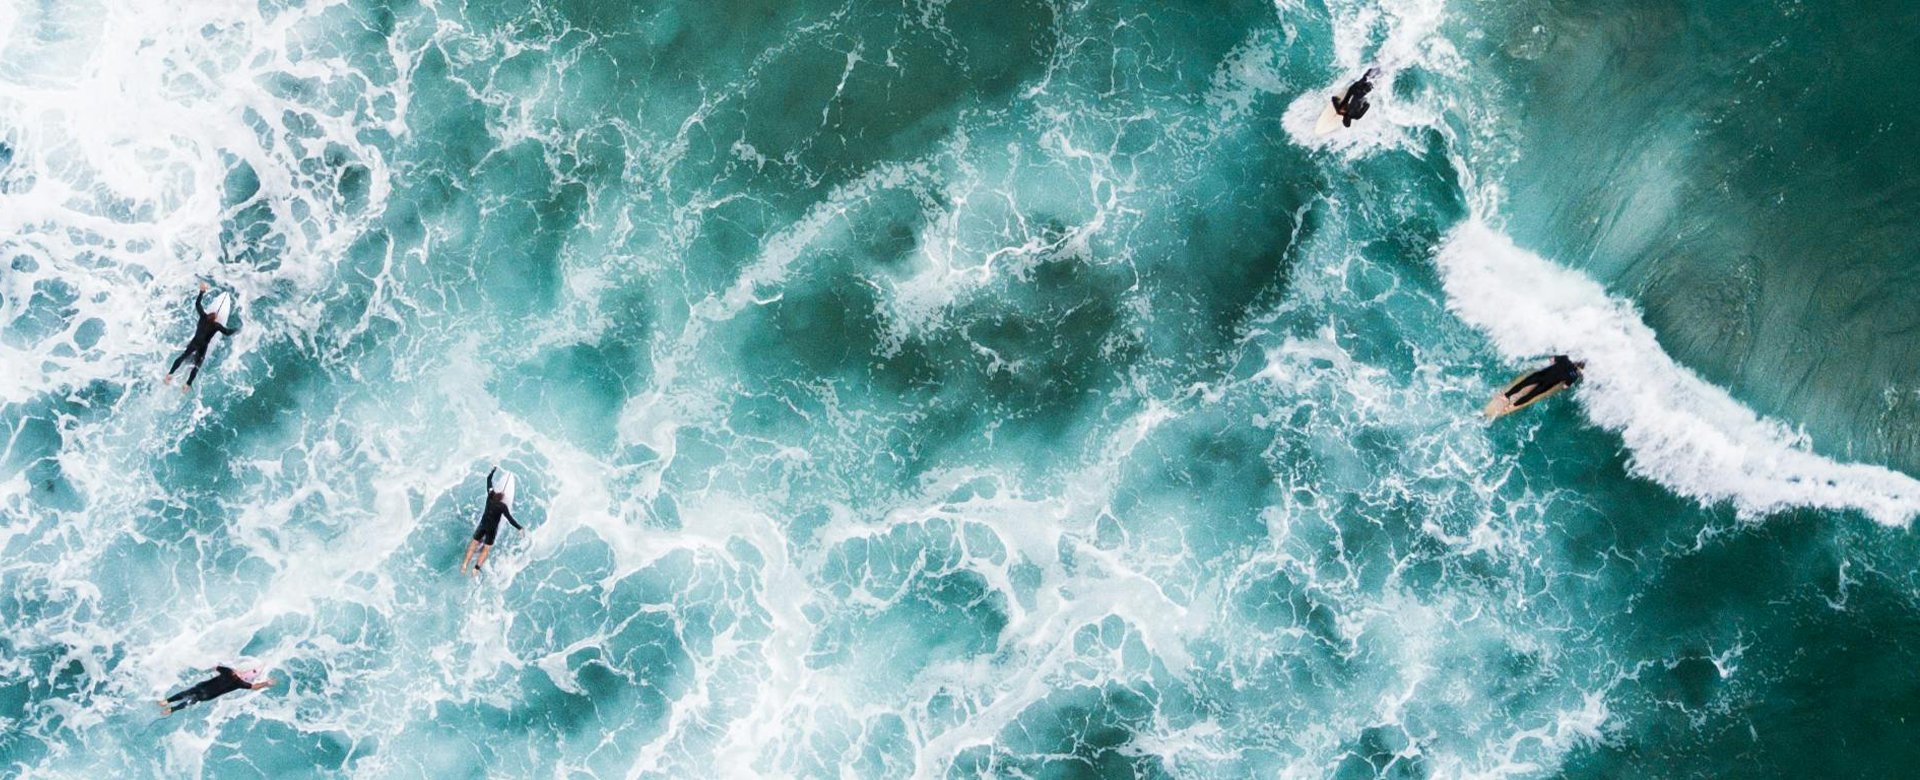 Pohľad z výšky na viaceré osoby plávajúce na surfoch v morských vlnách.